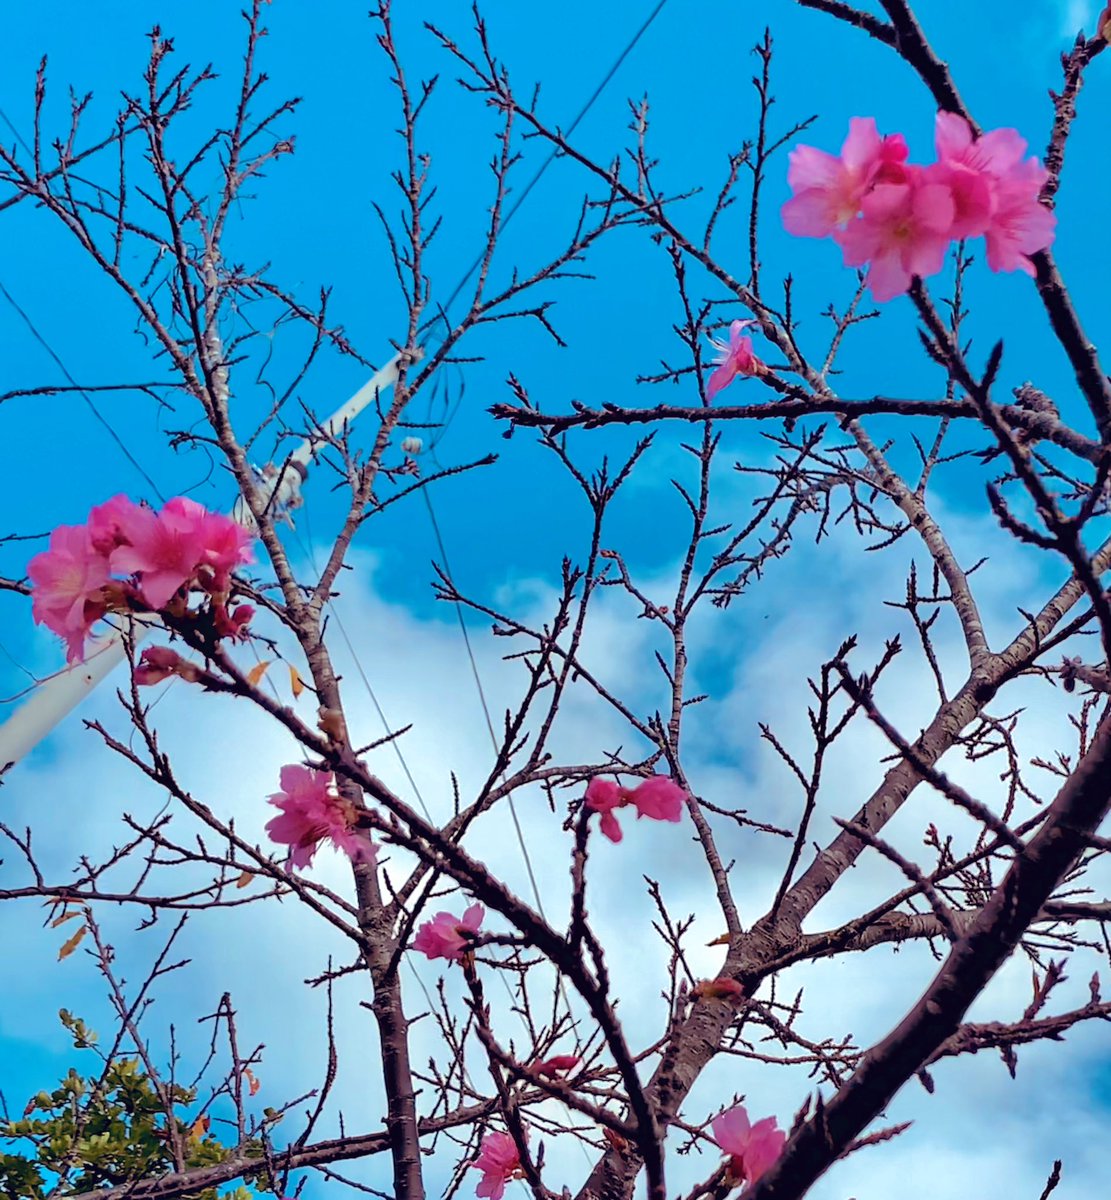 「桜の季節です 」|友利 弦のイラスト